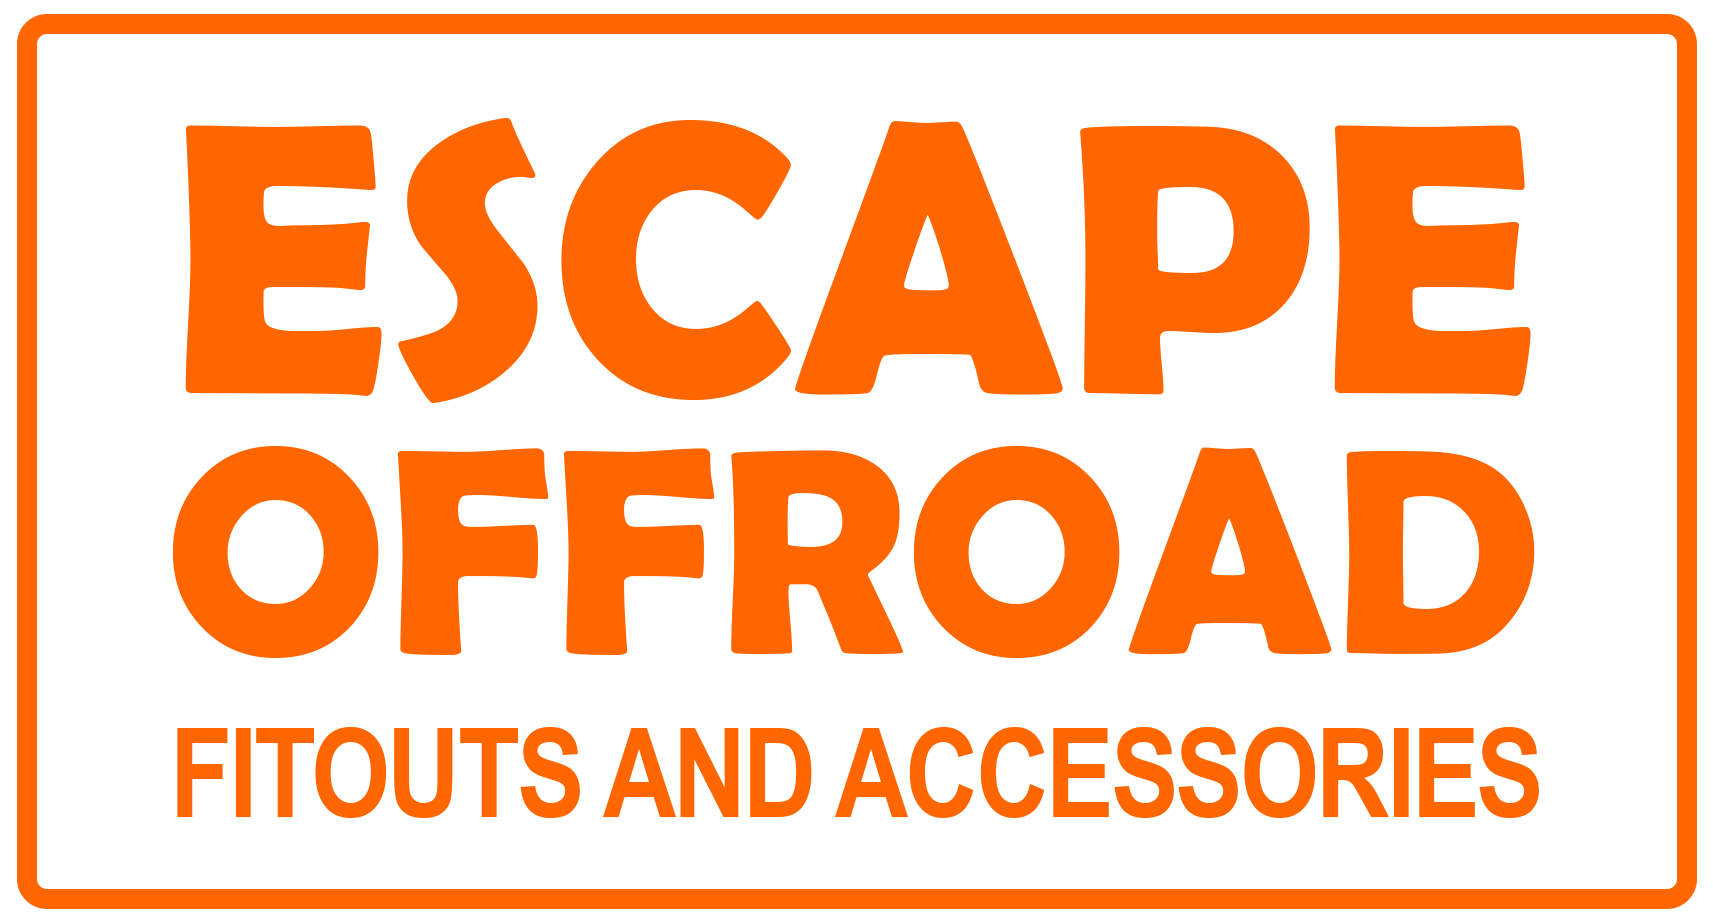 Escape Offroad